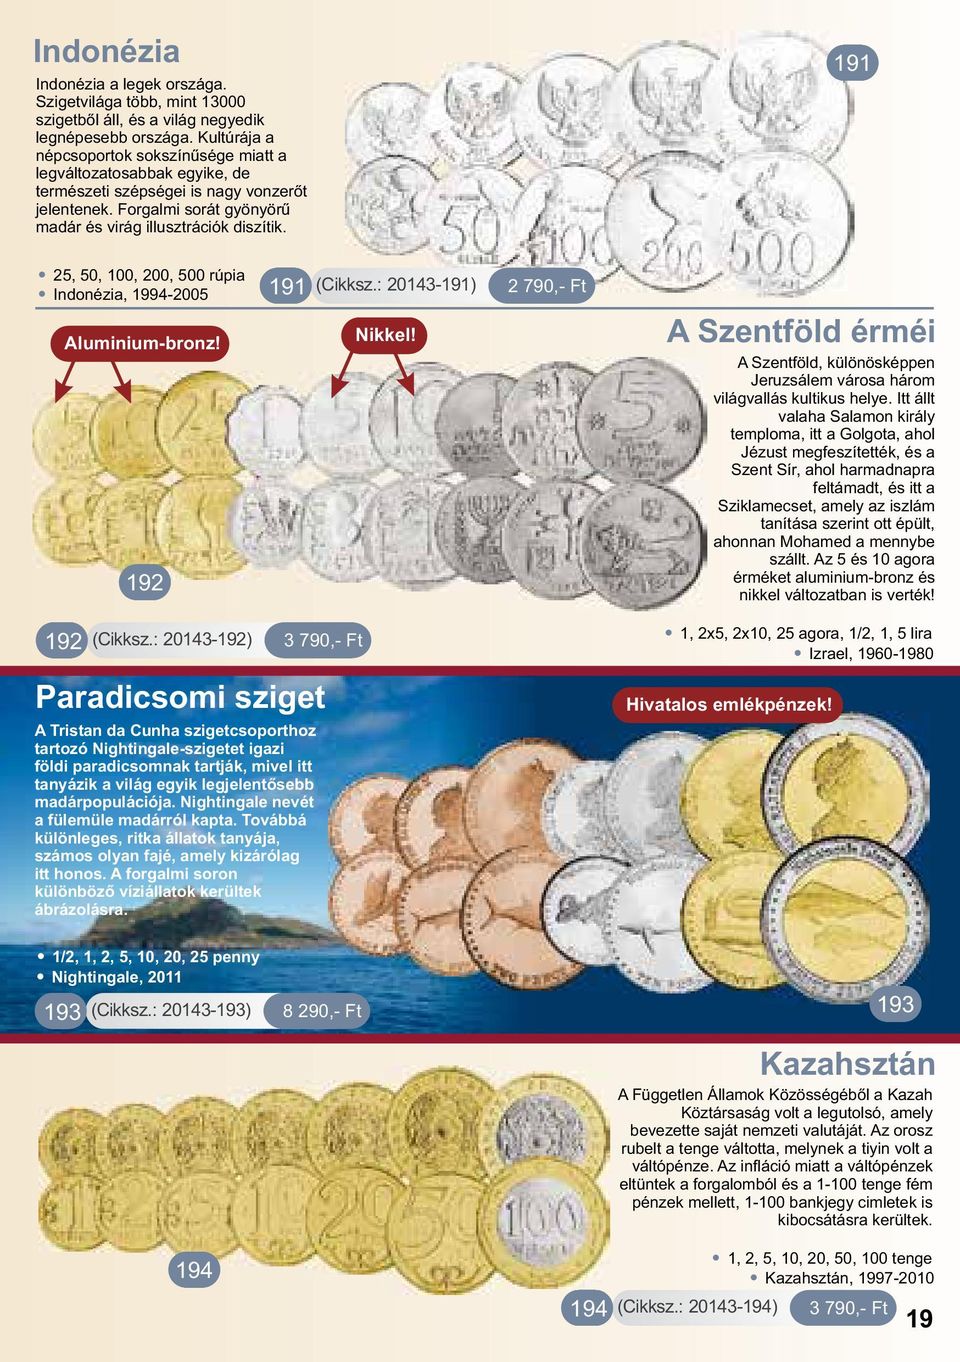 . 25, 50, 100, 200, 500 rúpia 191. Indonézia, 1994-2005 Aluminium-bronz! 192 192 (Cikksz.